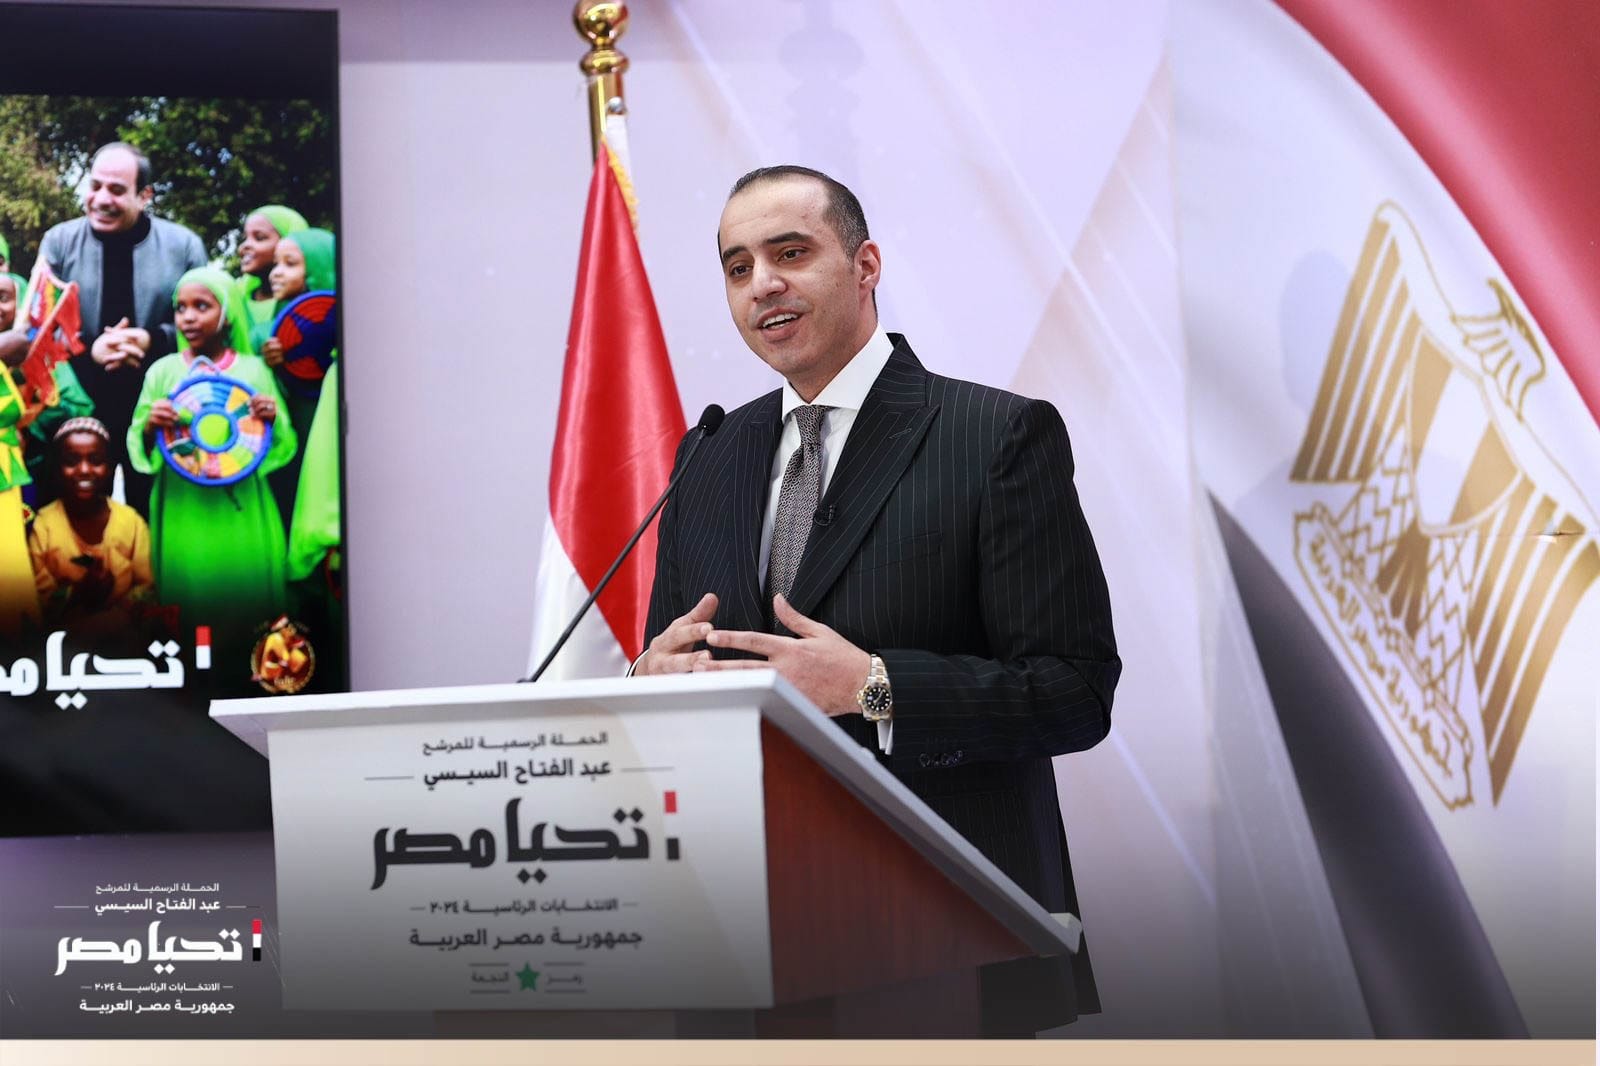 وسام صبري المدير التنفيذي للحملة الانتخابية للمرشح الرئاسي عبدالفتاح السيسى